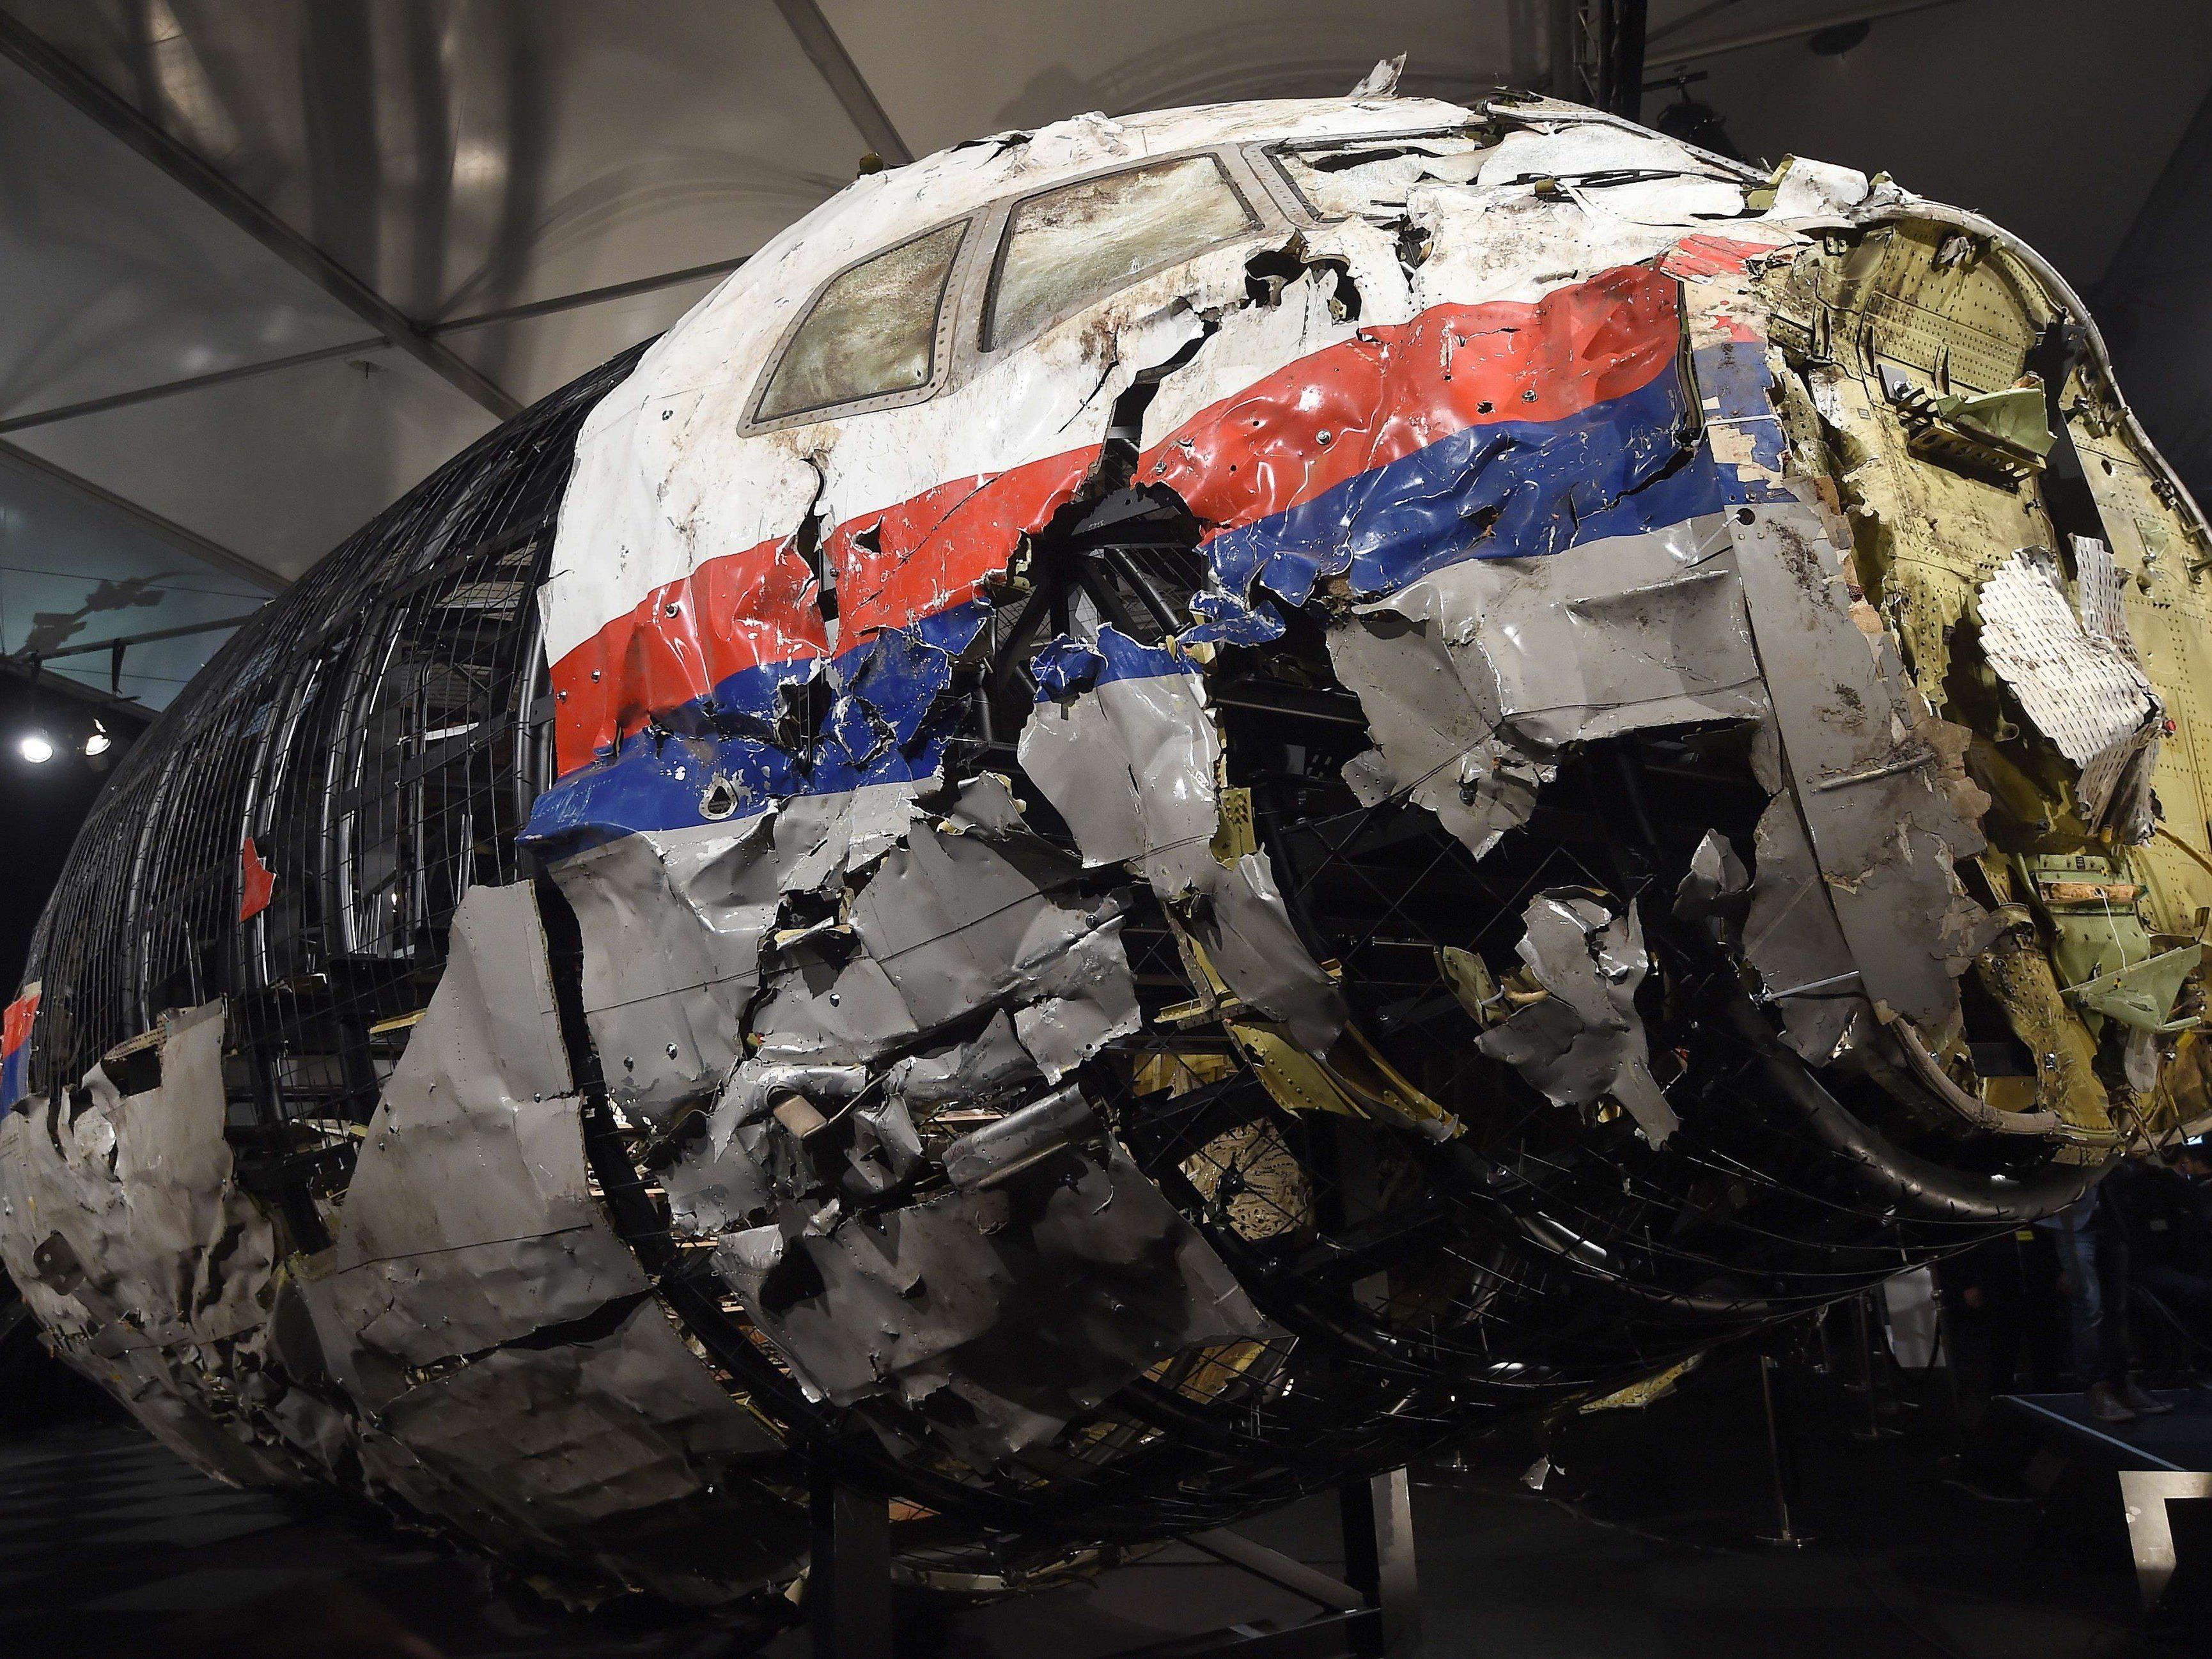 Mann festgenommen: Teile der Malaysia-Airlines-Maschine als "Souvenirs" angeboten?